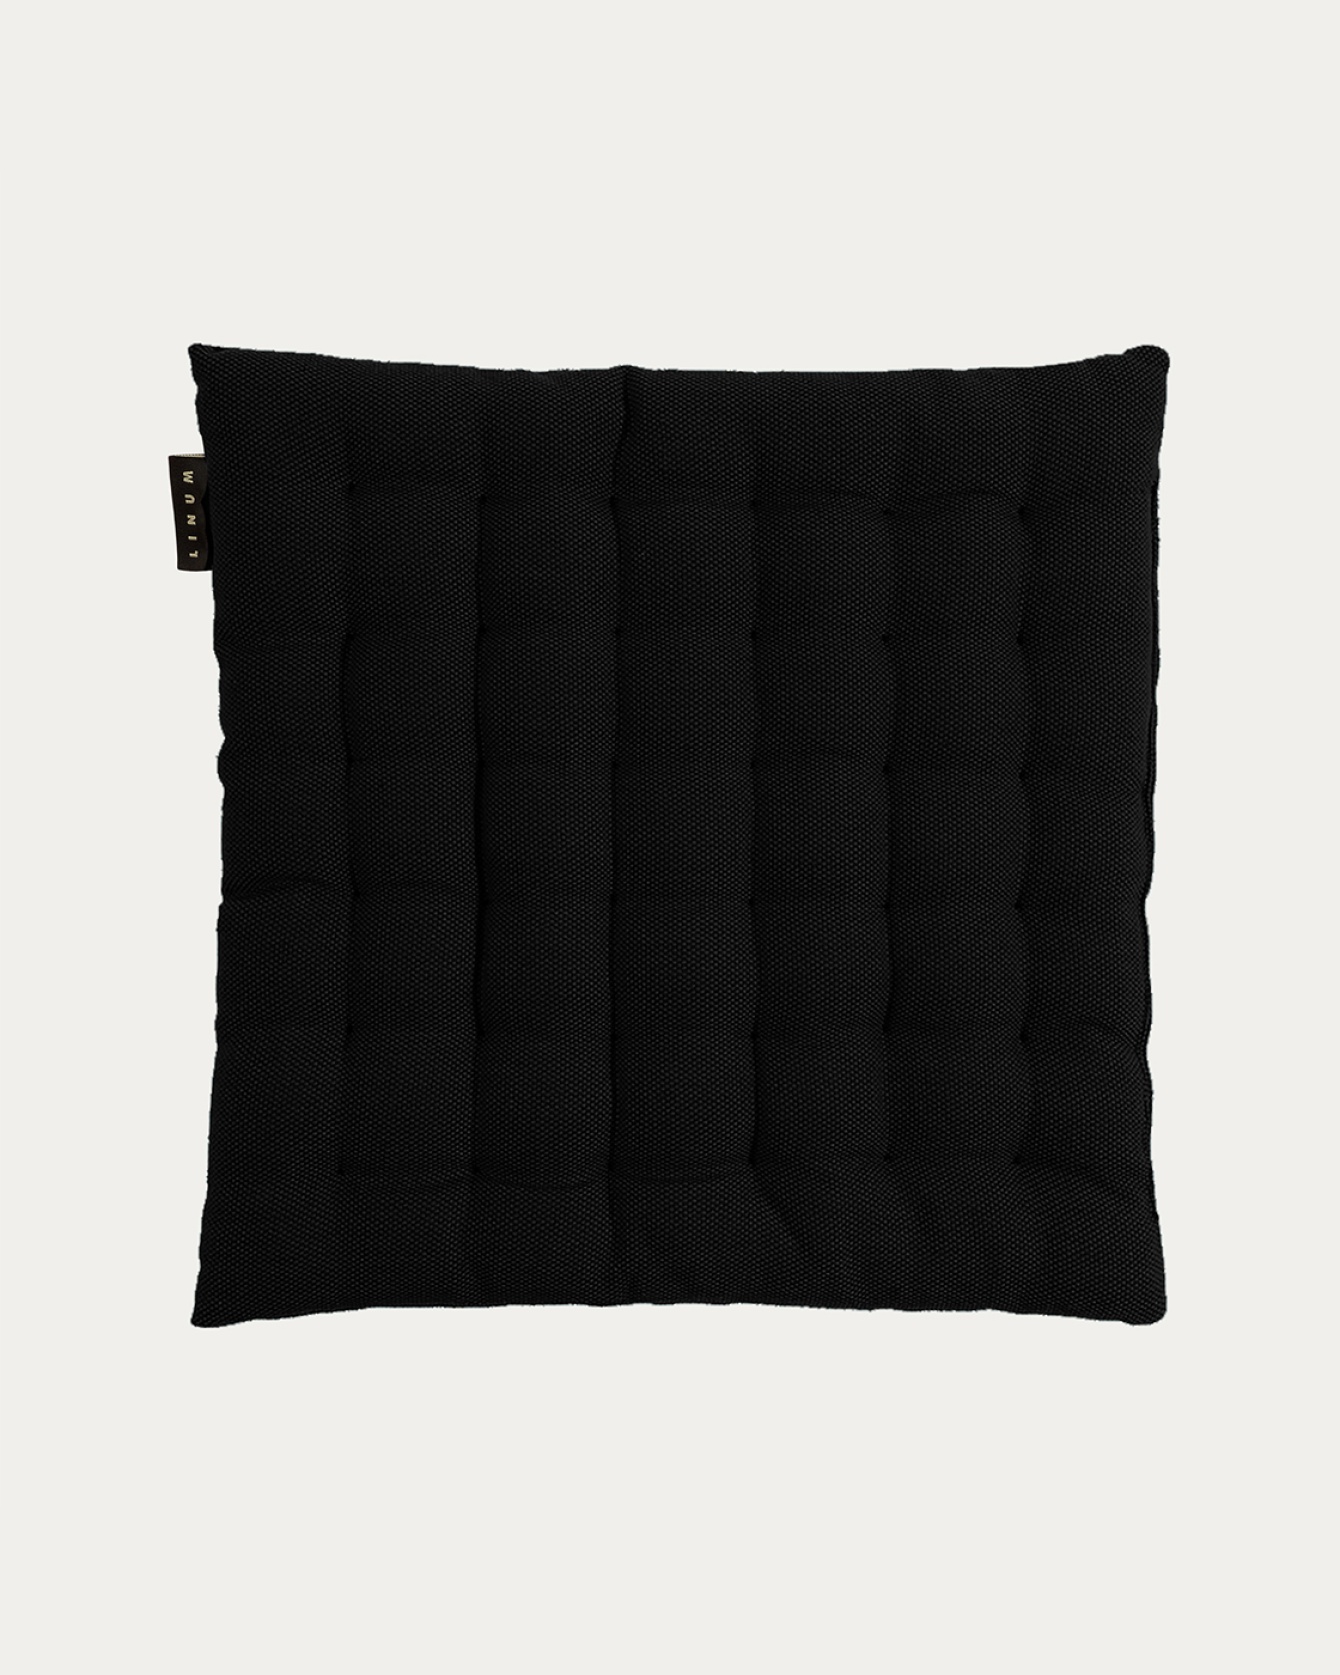 Produktbild schwarz PEPPER Sitzkissen aus weicher Baumwolle mit Füllung aus recyceltem Polyester von LINUM DESIGN. Größe 40x40 cm.